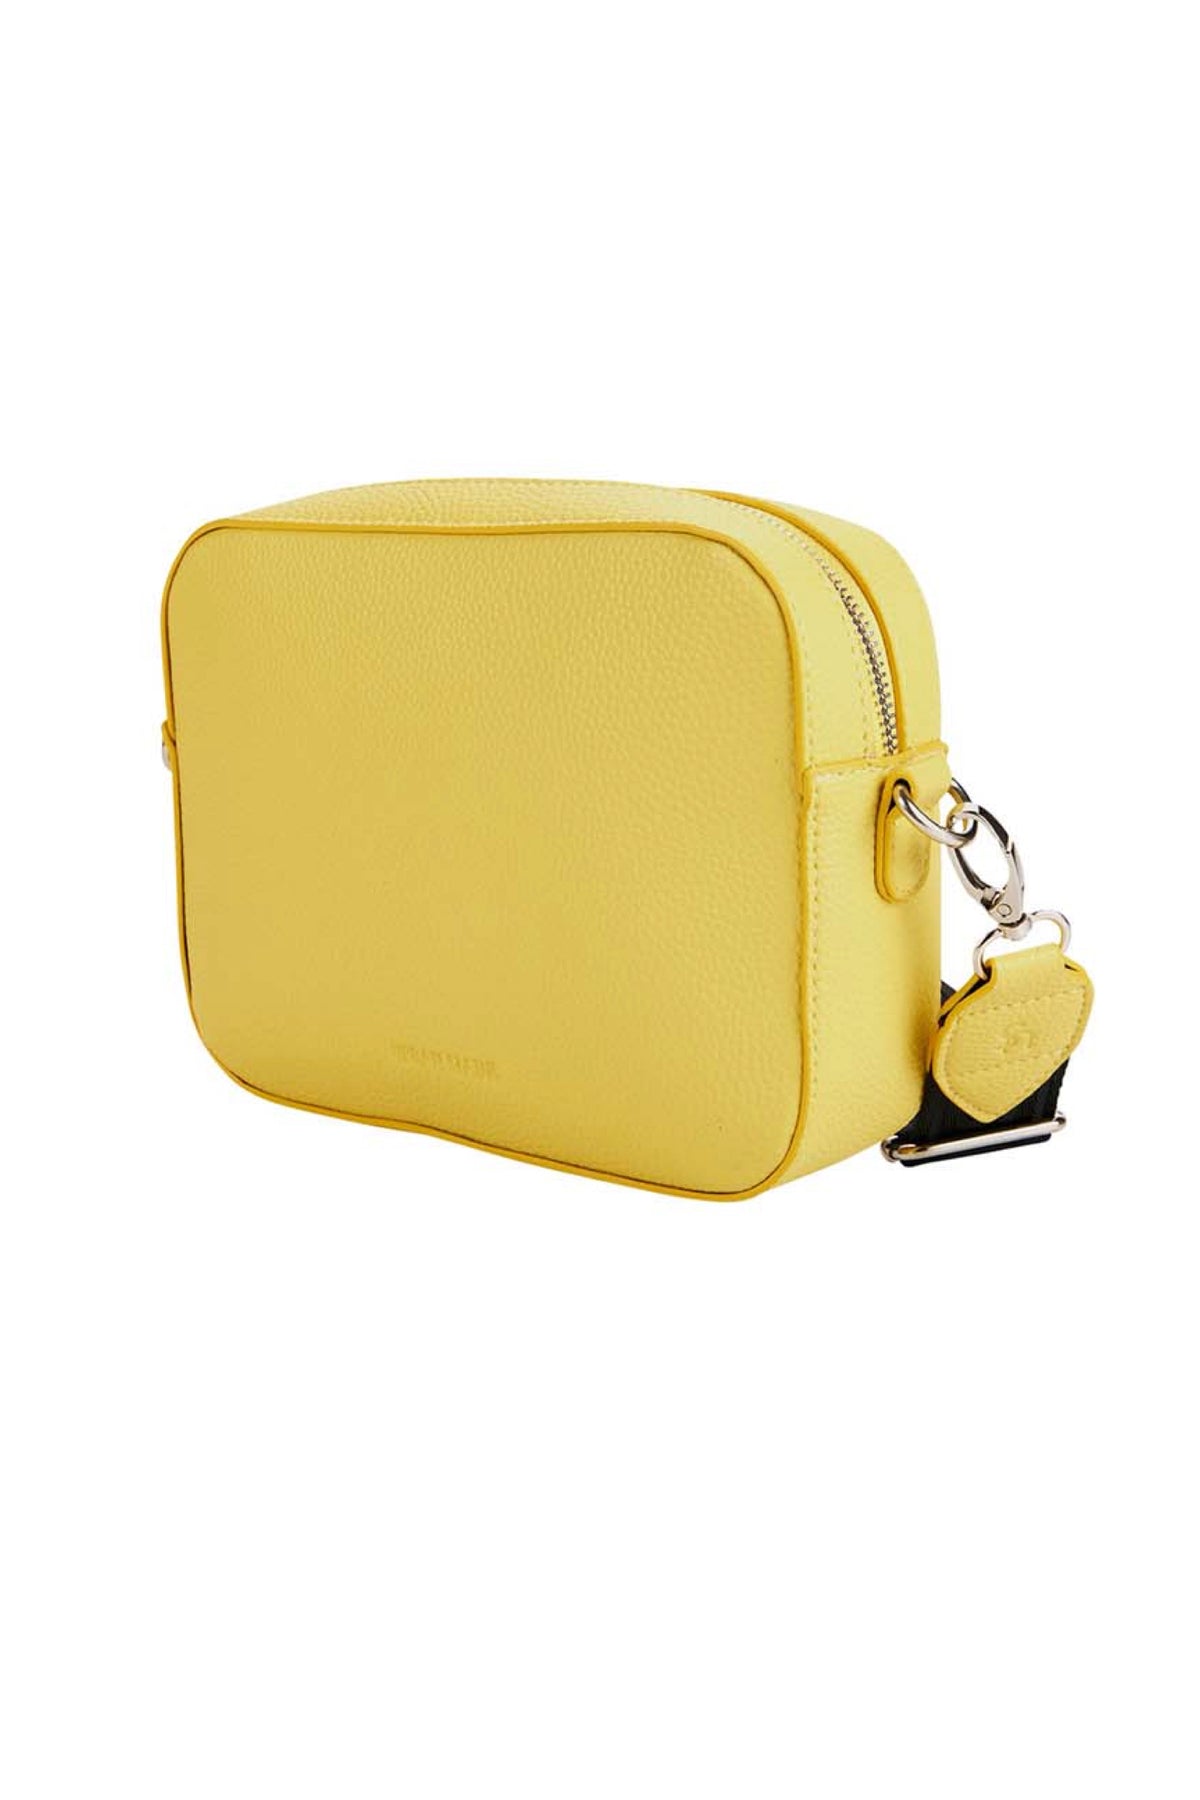 Bond Bag Yellow